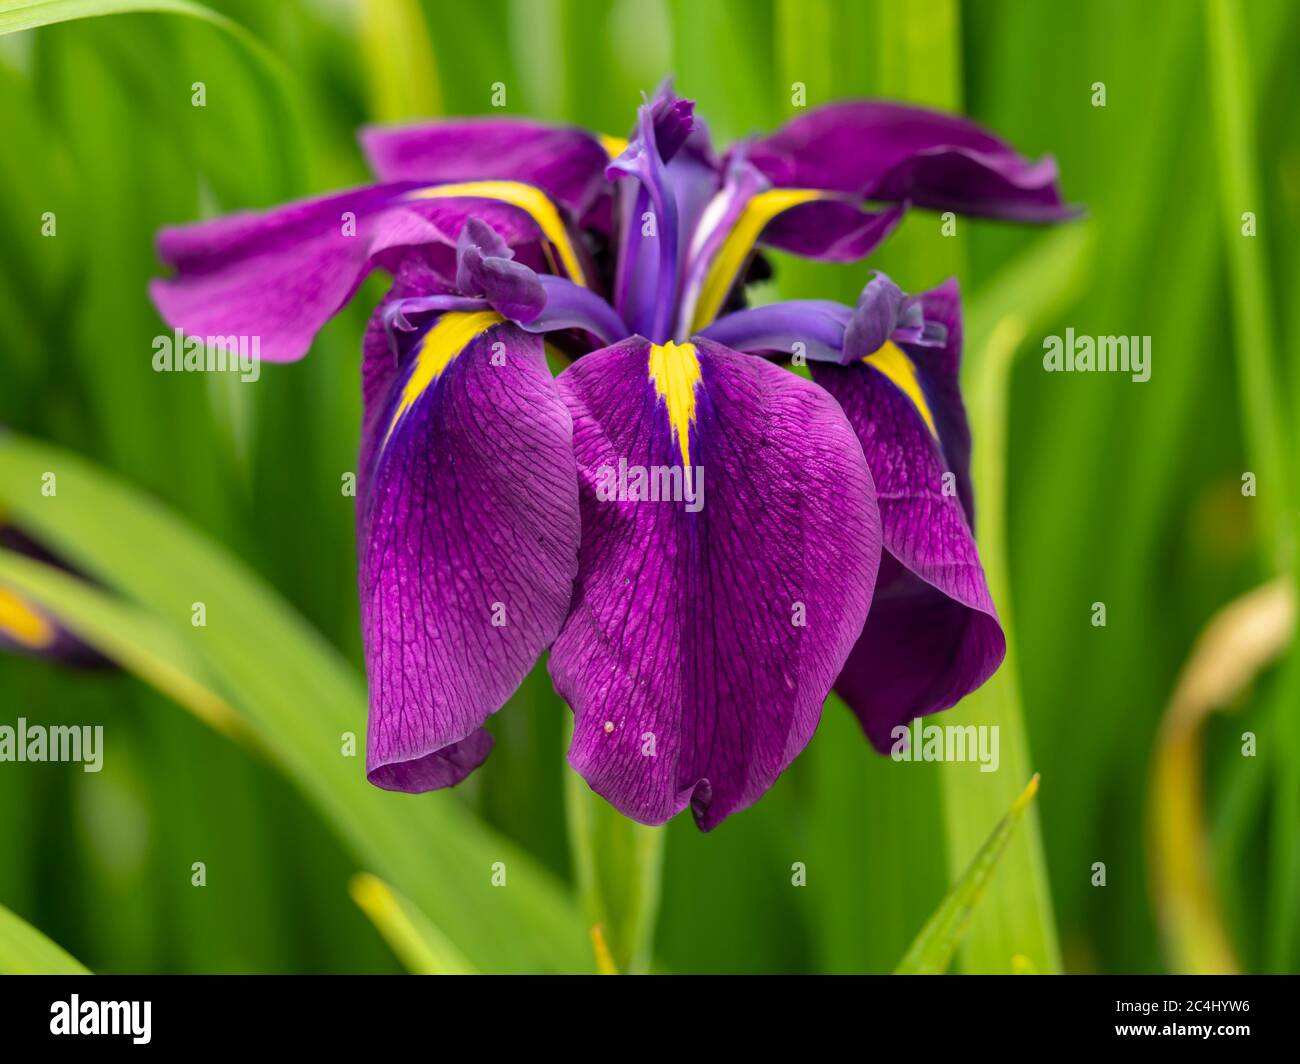 Gros plan d'un bel iris japonais violet et jaune, Iris ensata, fleurissant  dans un jardin Photo Stock - Alamy